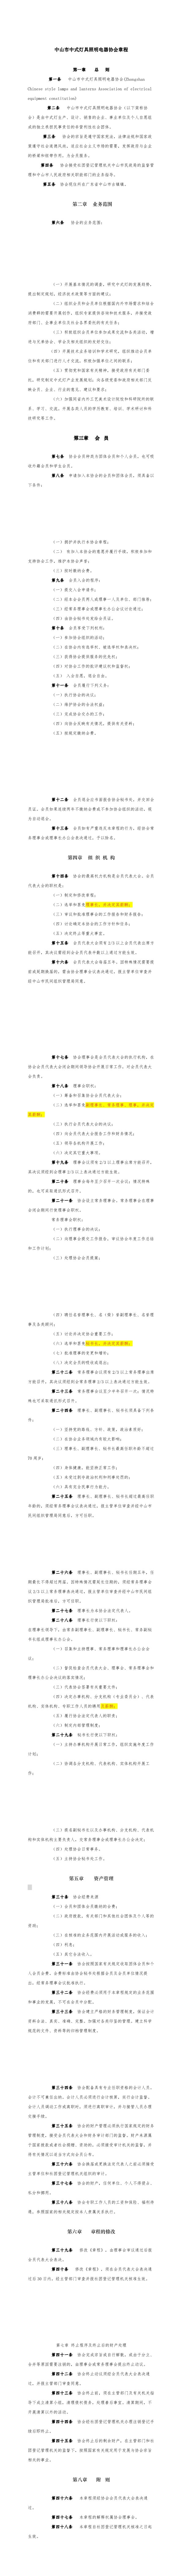 中山市中式灯具照明电器协会章程(1)(1-10).jpg